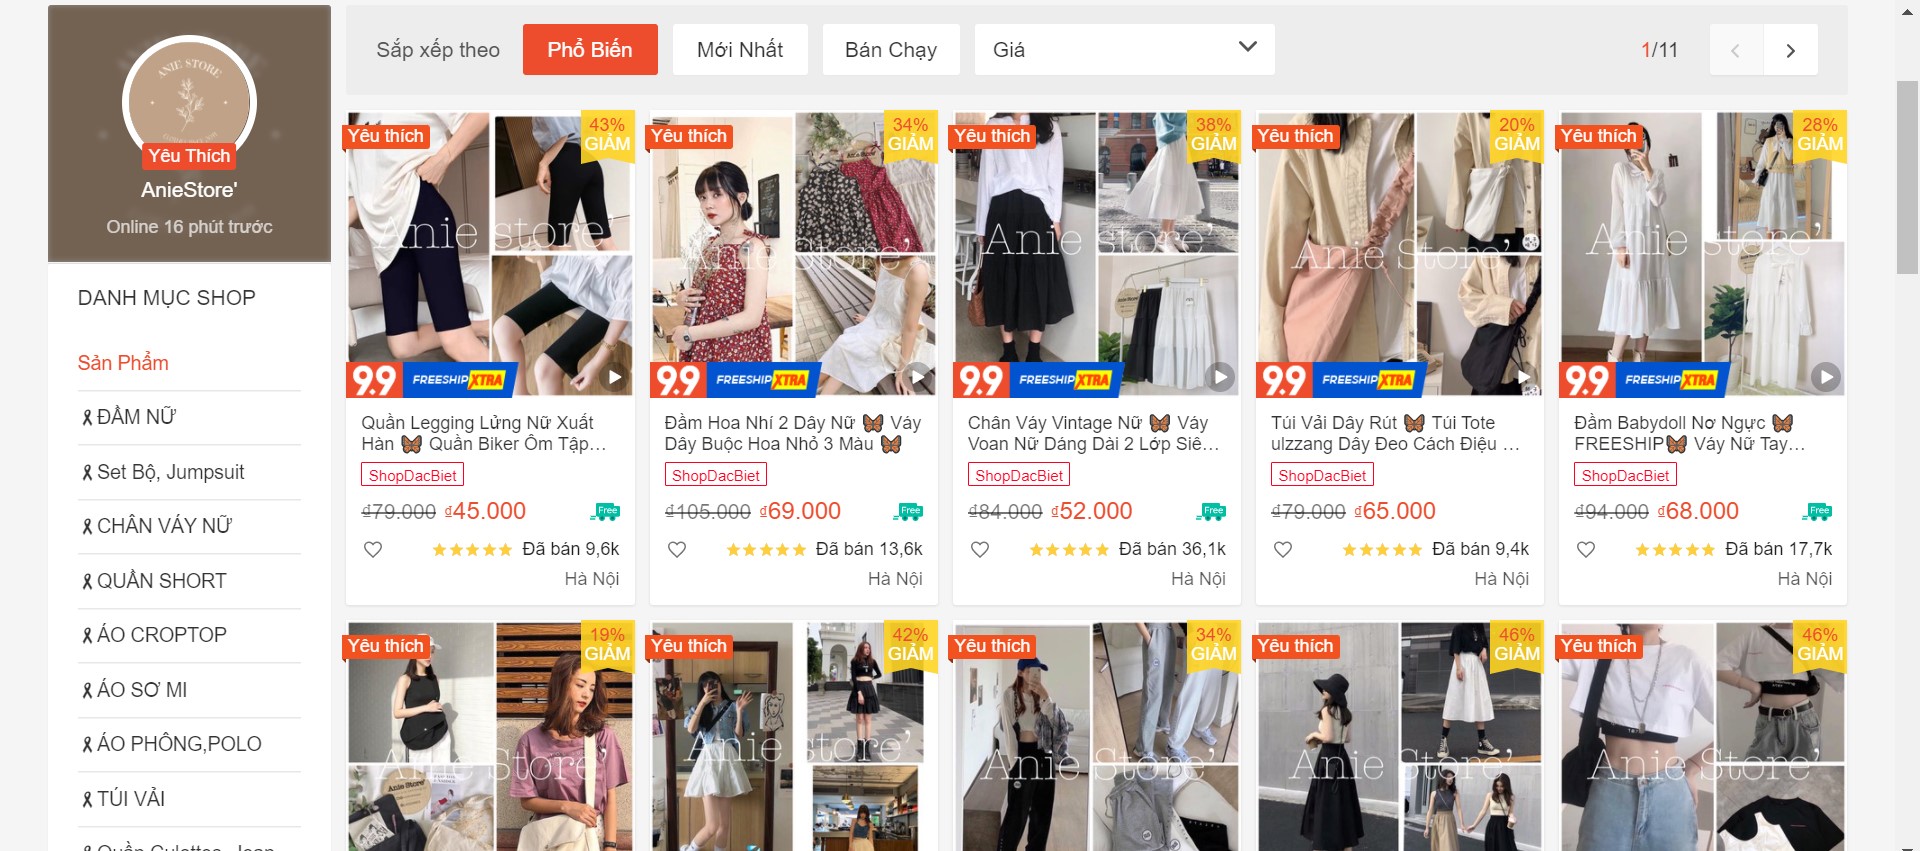 shop bán quần áo Hàn Quốc